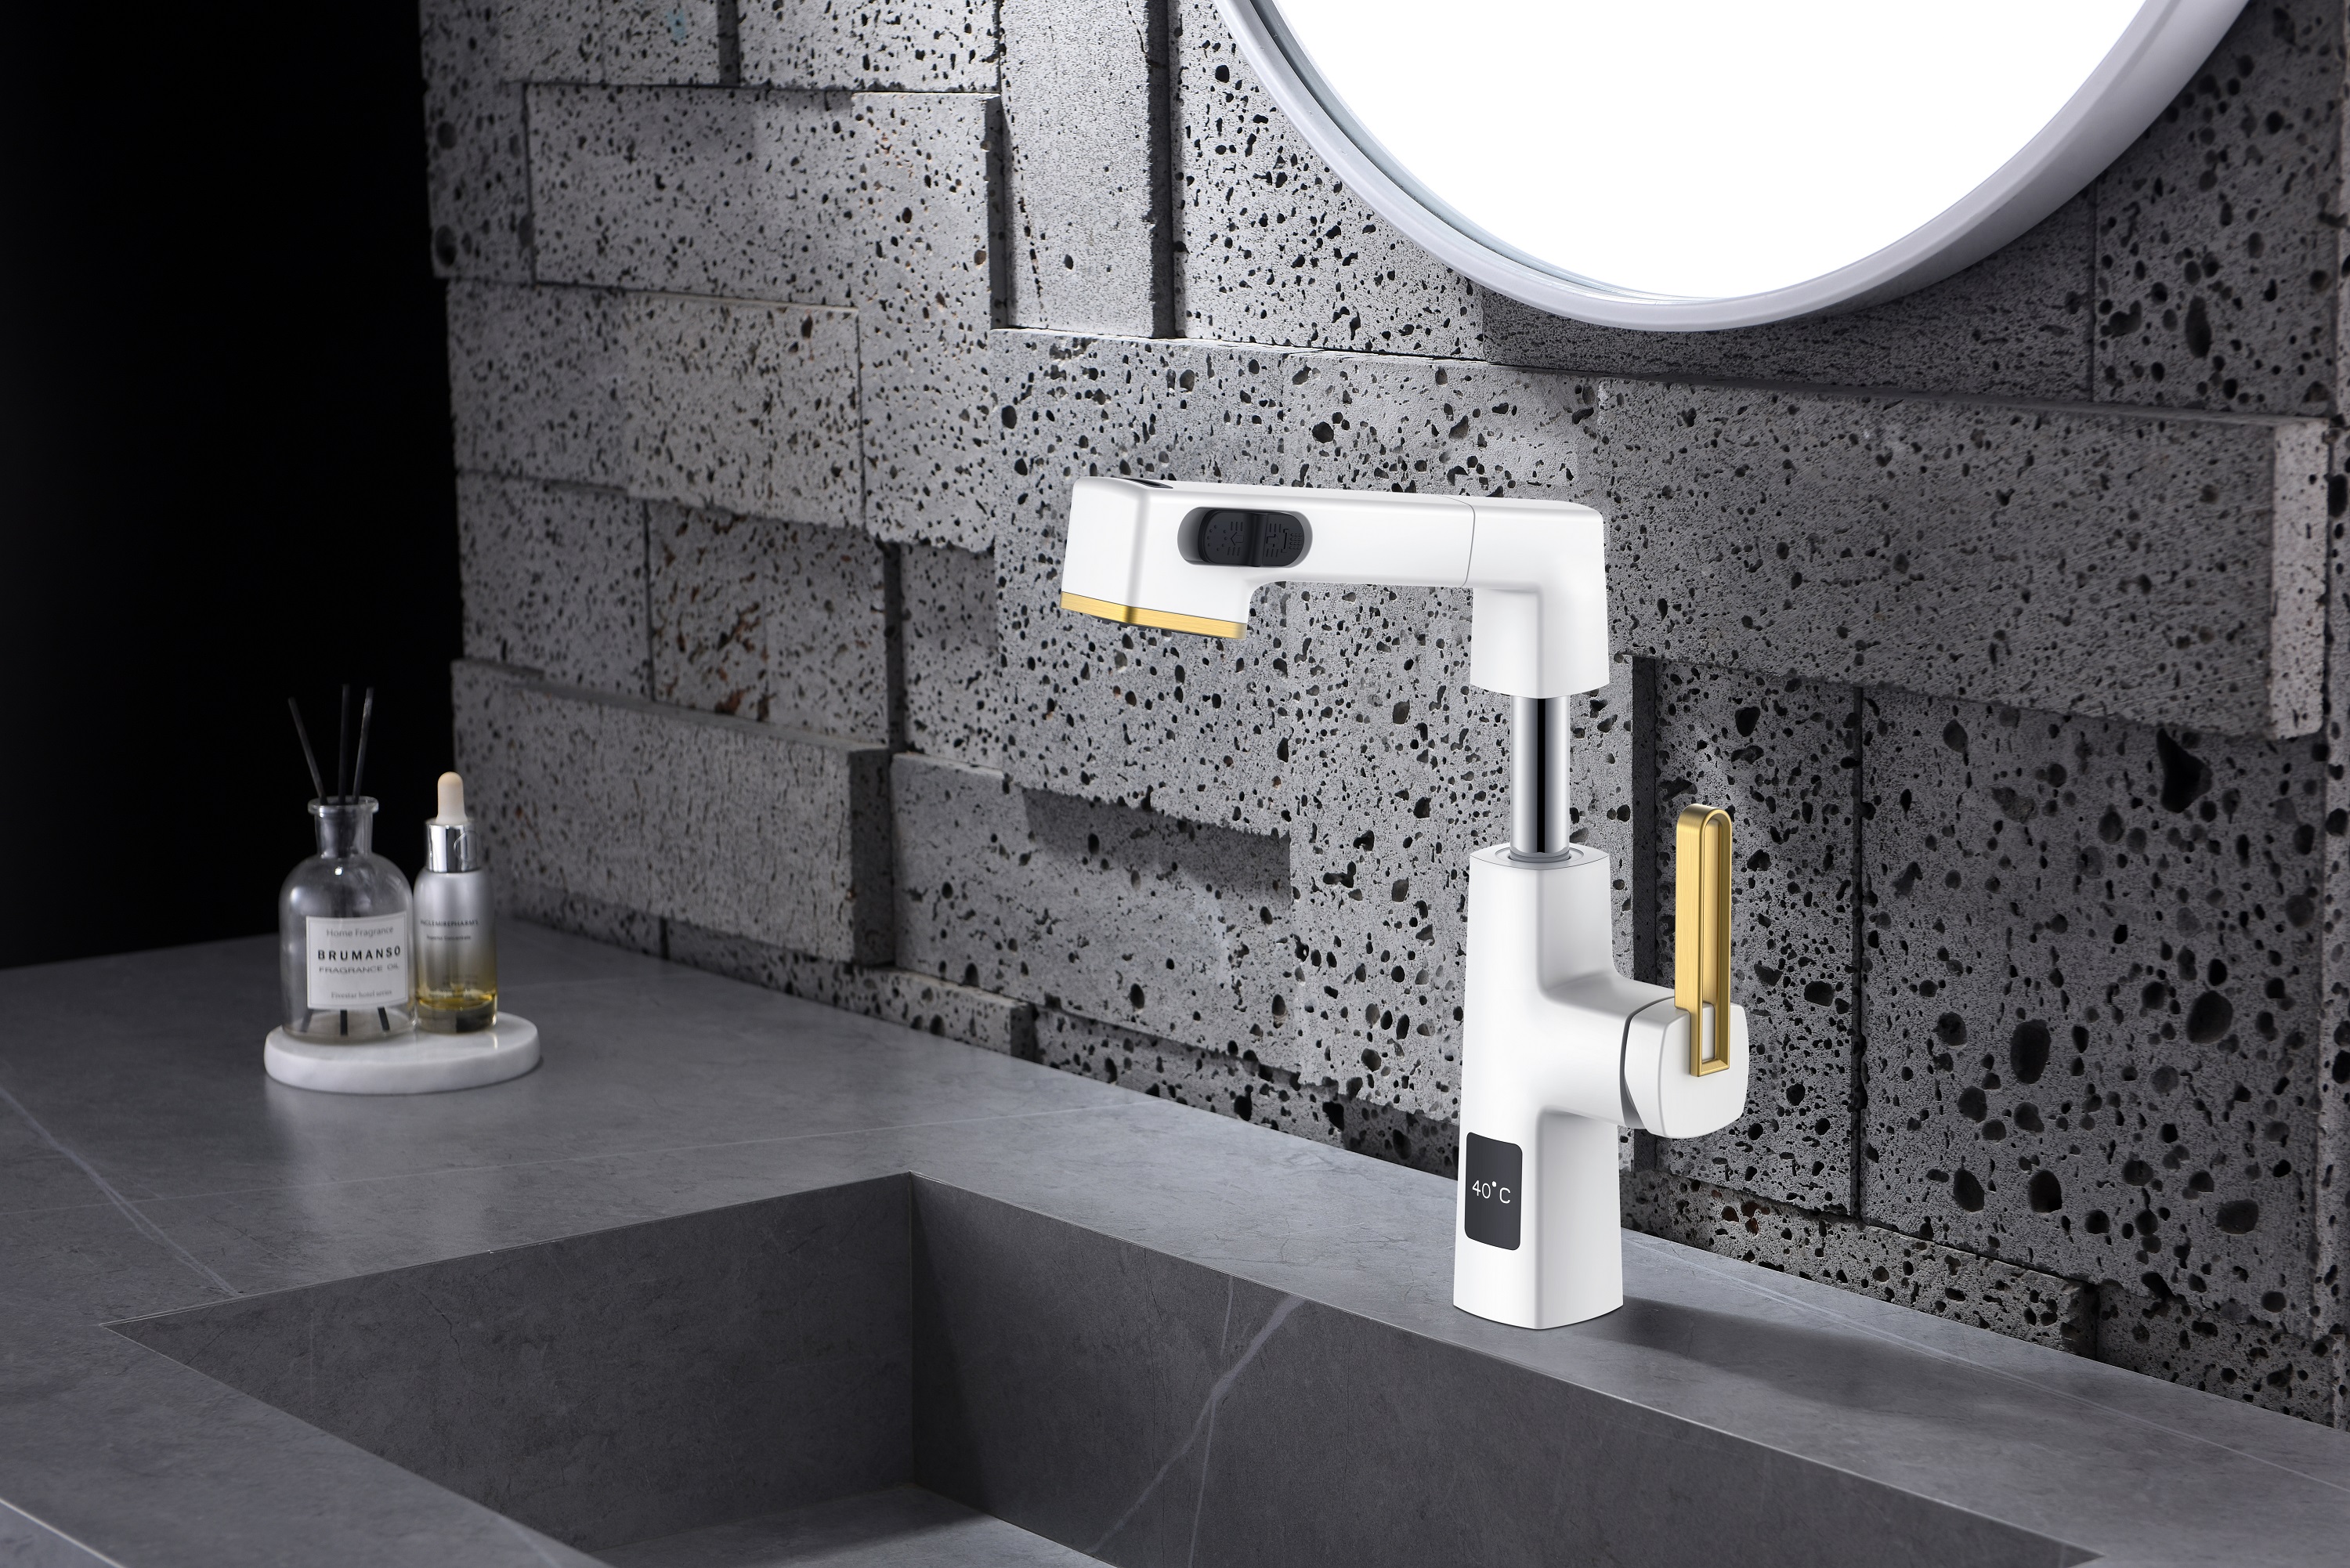  Дисплей температуры Уникальный дизайн Черный нержавеющий и розовое золото Выдвижной смеситель для ванной комнаты Регулируемая высота